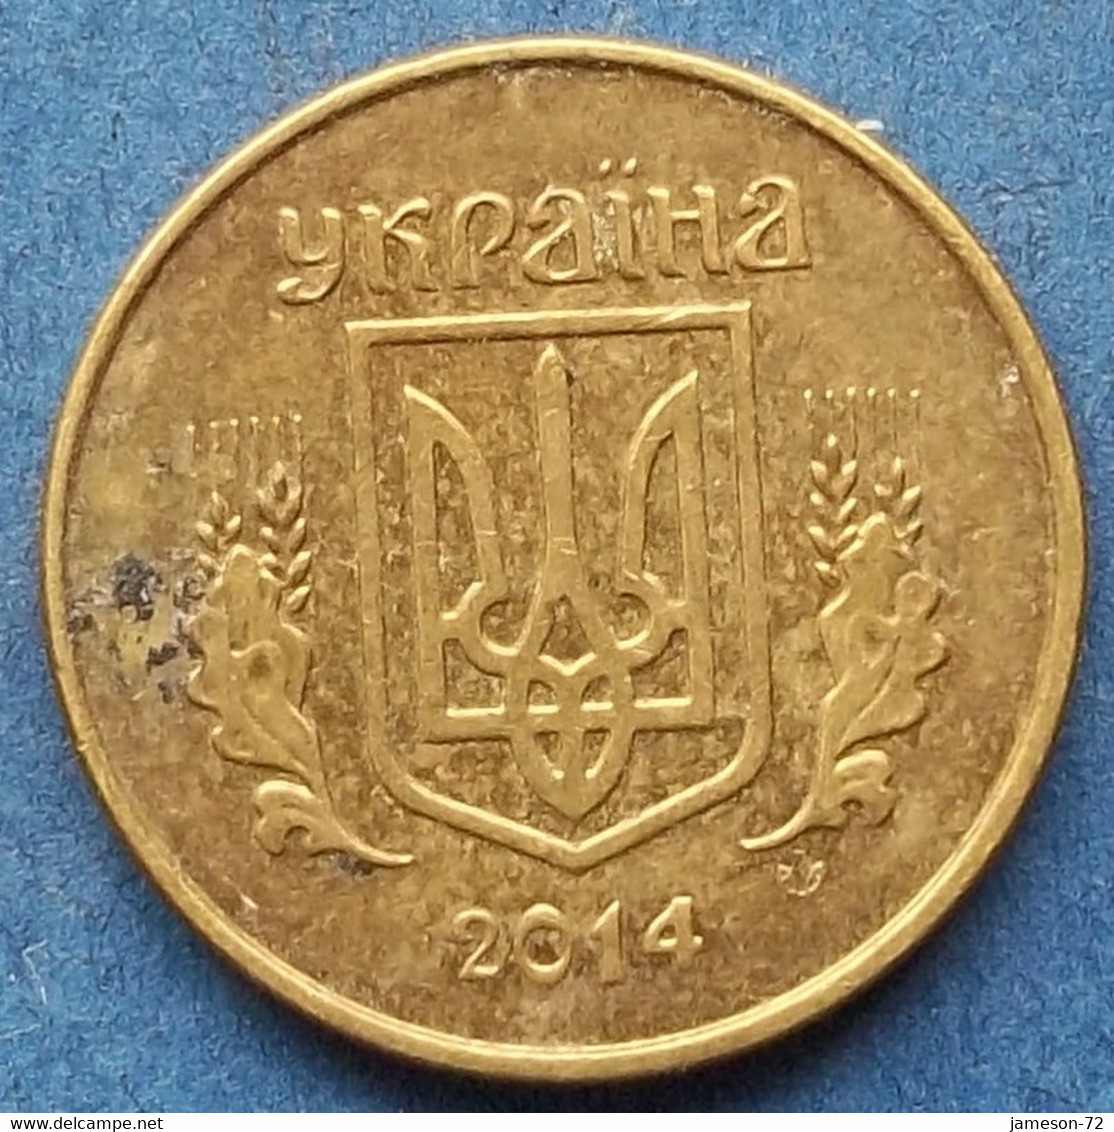 UKRAINE - 10 Kopiyok 2014 Reform Coinage (1996) - Edelweiss Coins - Ukraine